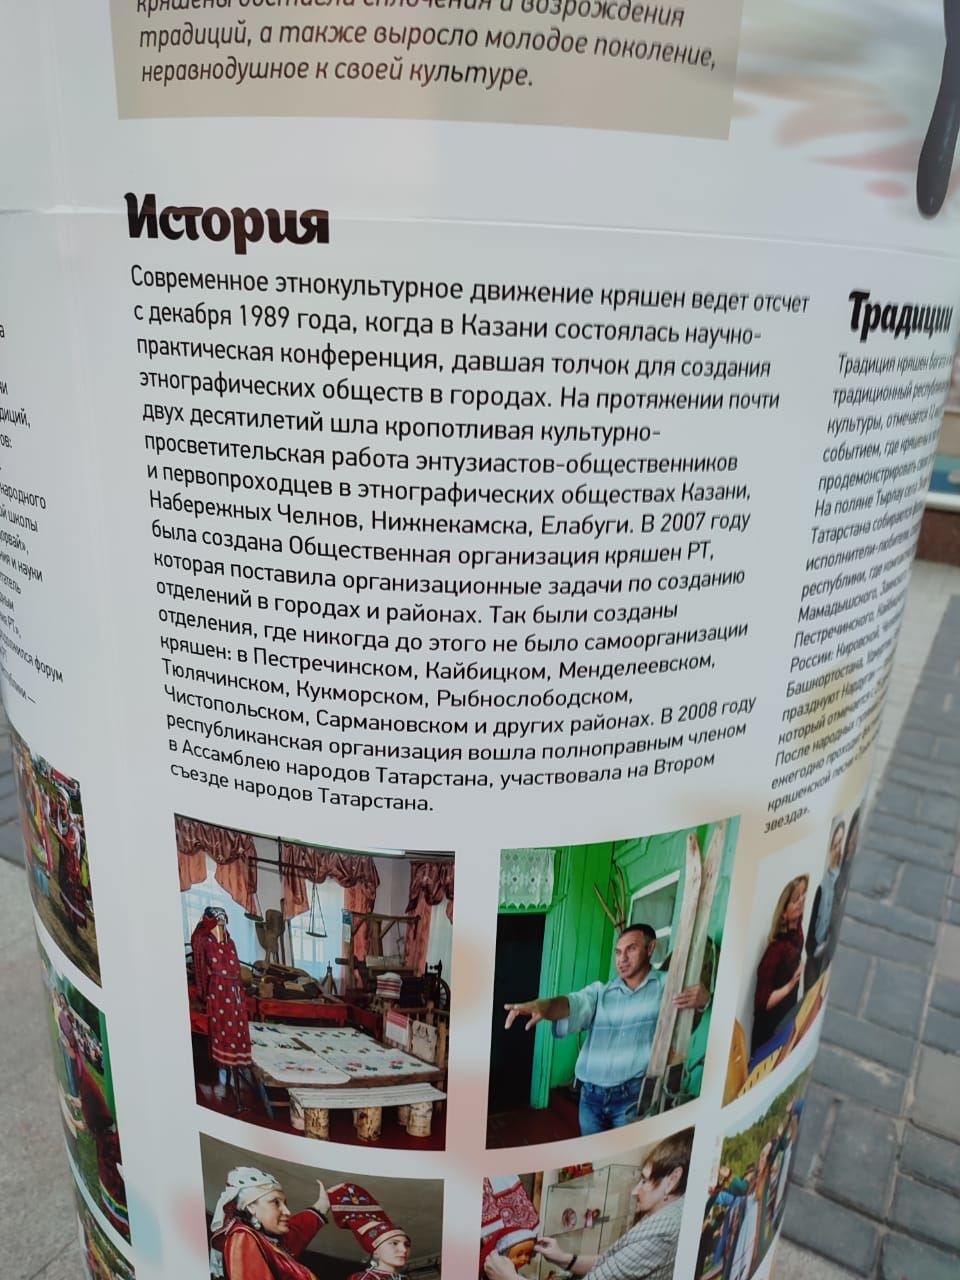 На выставке под открытым небом о народах Татарстана представлены кряшены